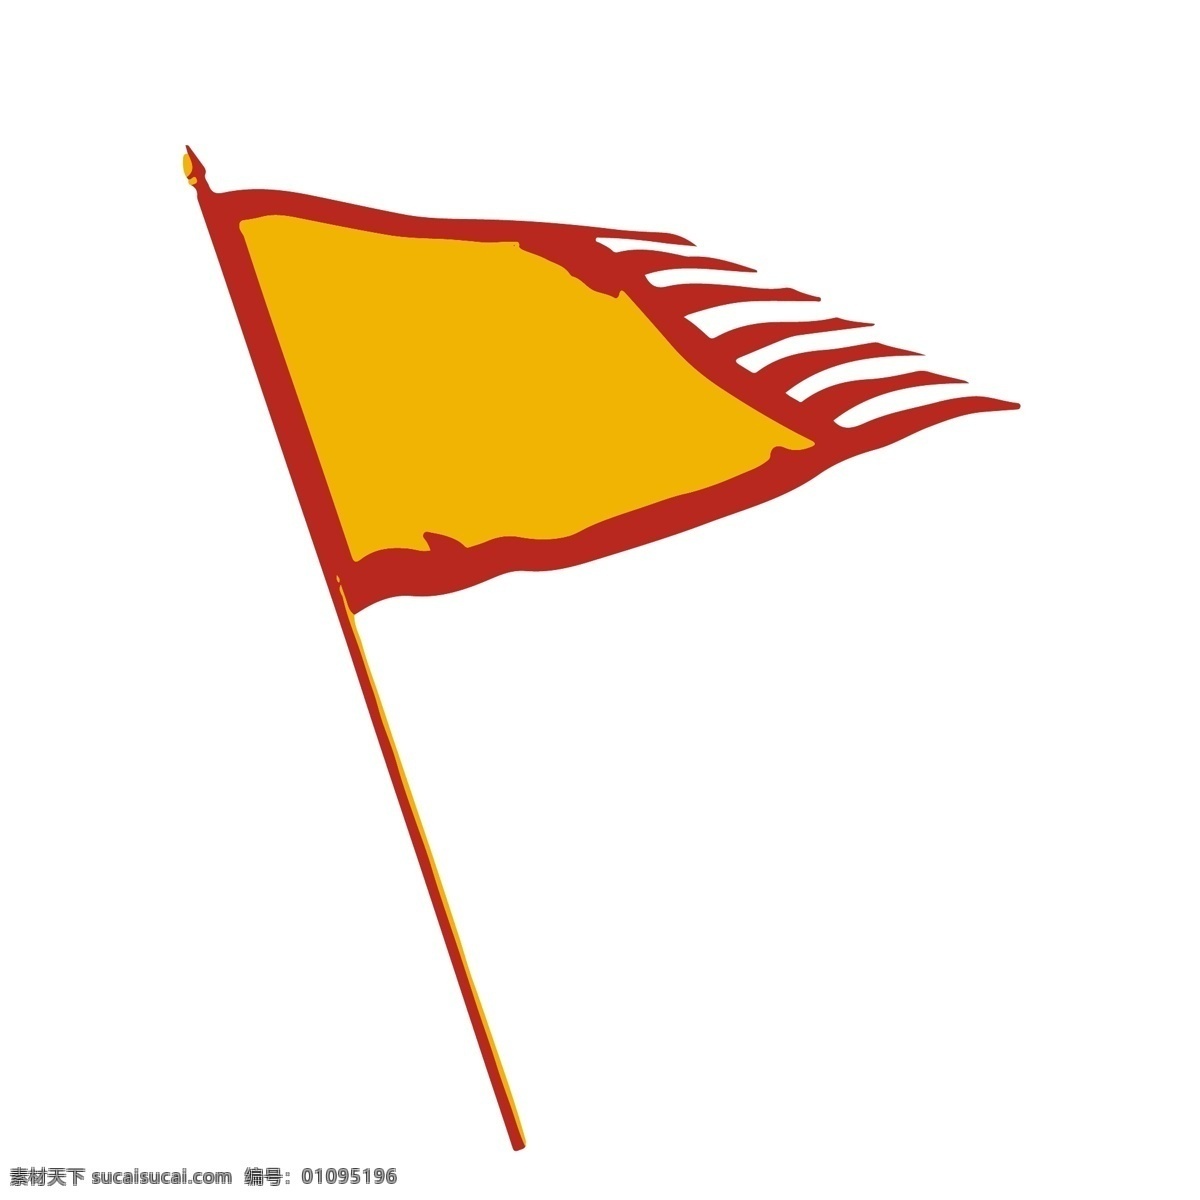 矢量 古代 旗帜 装饰设计 元素 古代旗帜 装饰 设计元素 可商用 红色 黄色